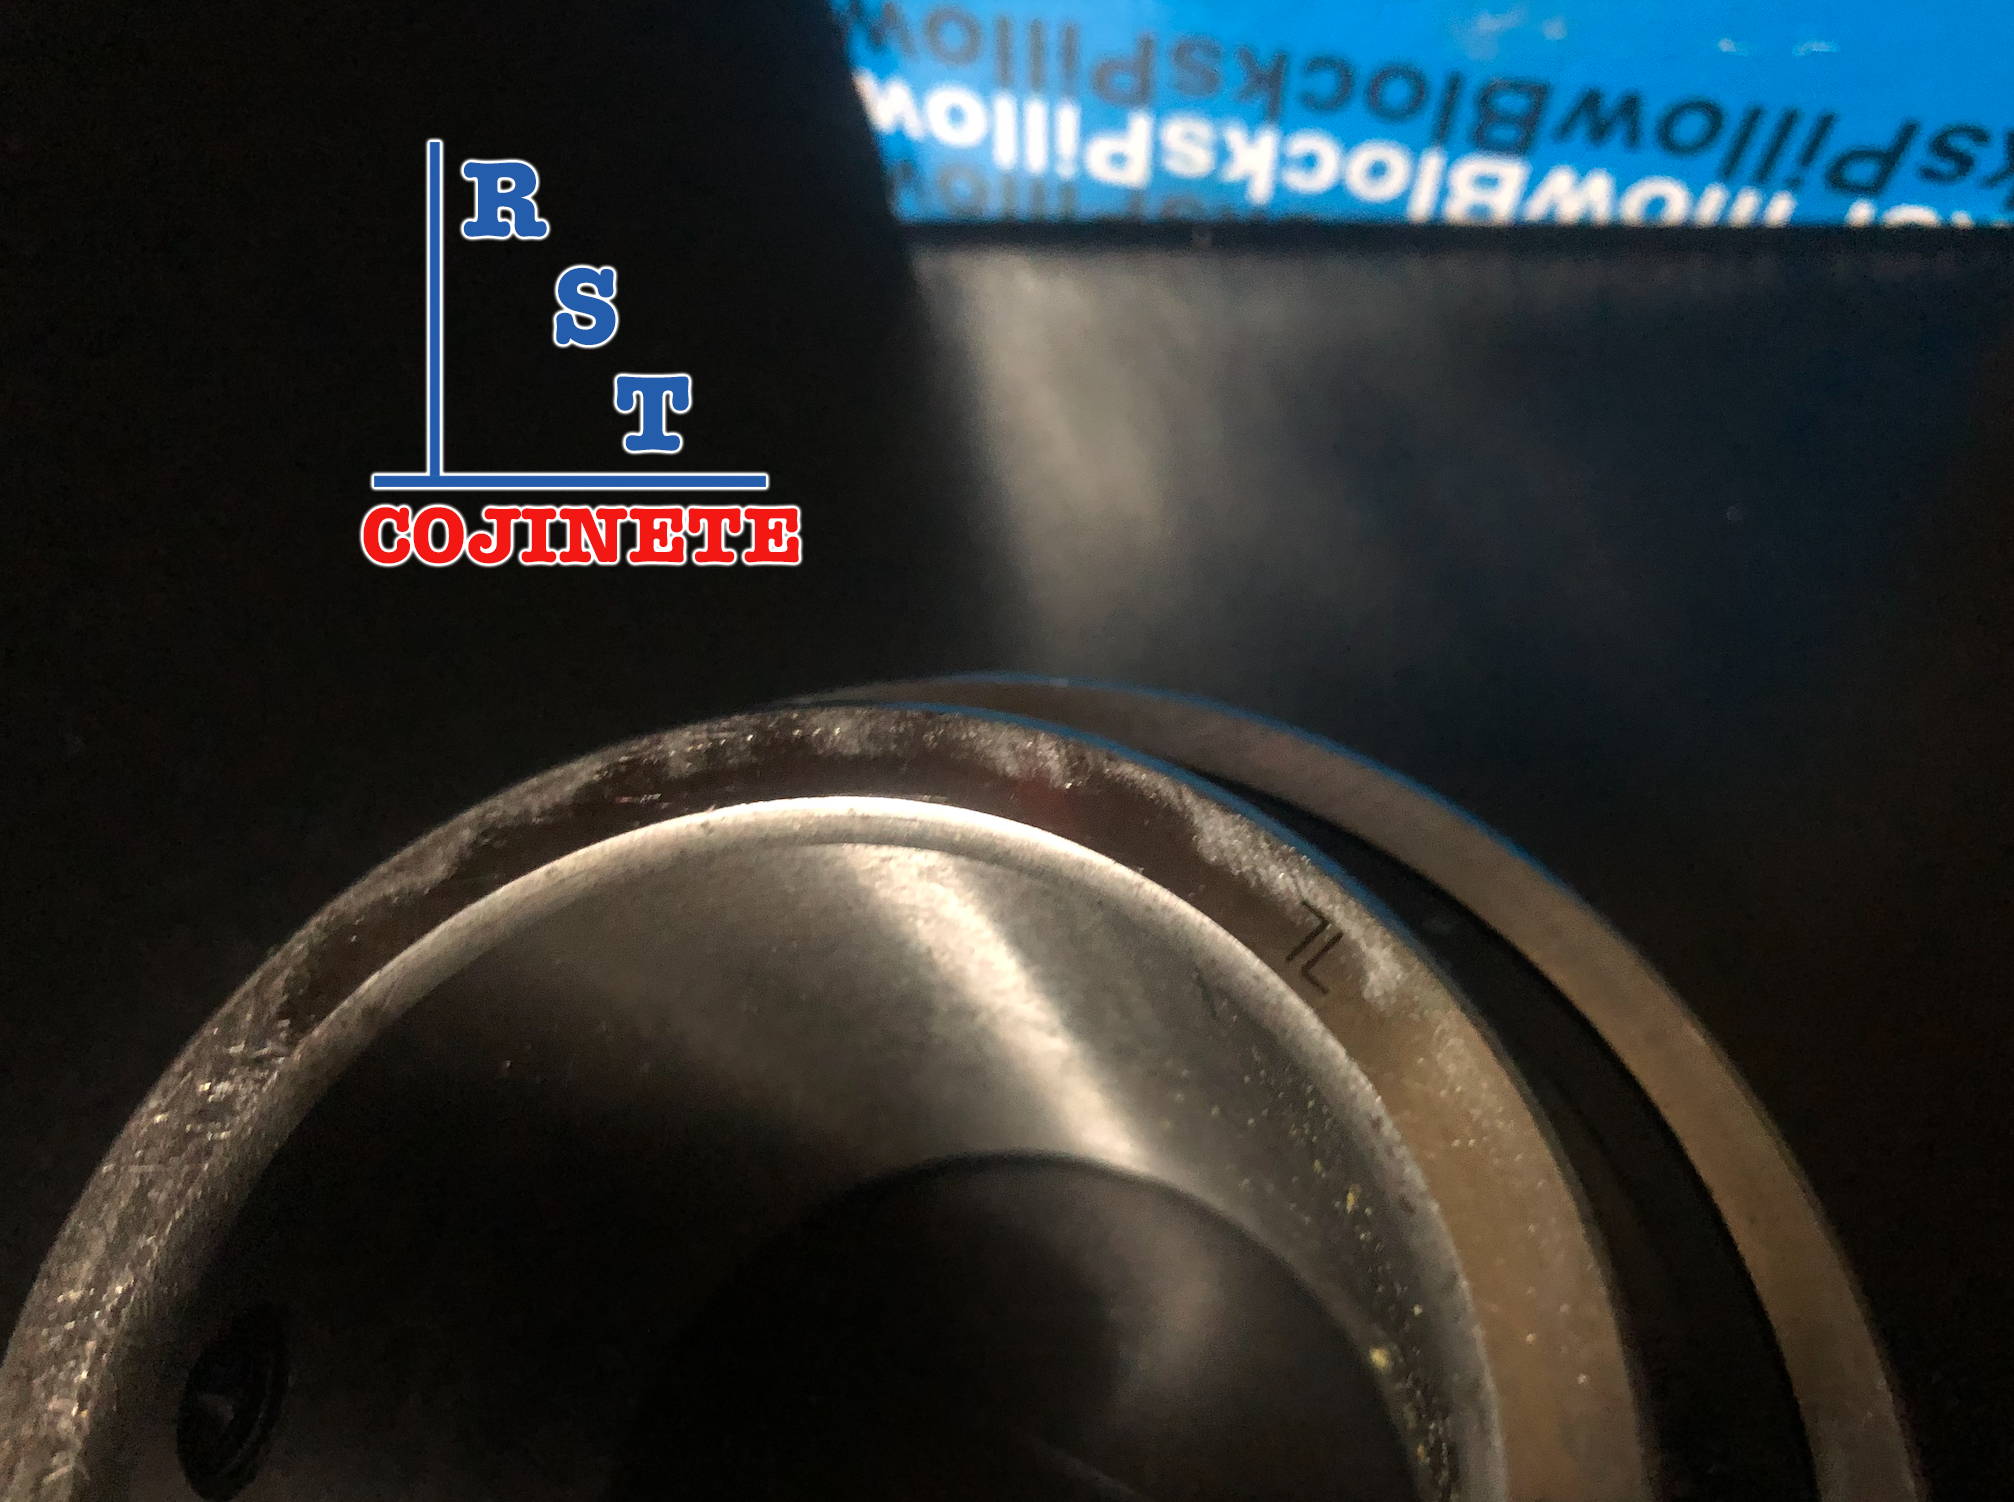 Cojinete insertable UC206-19 | Rodamiento para eje de 1-3/16" rígido de bolas con sello de hule para chumacera